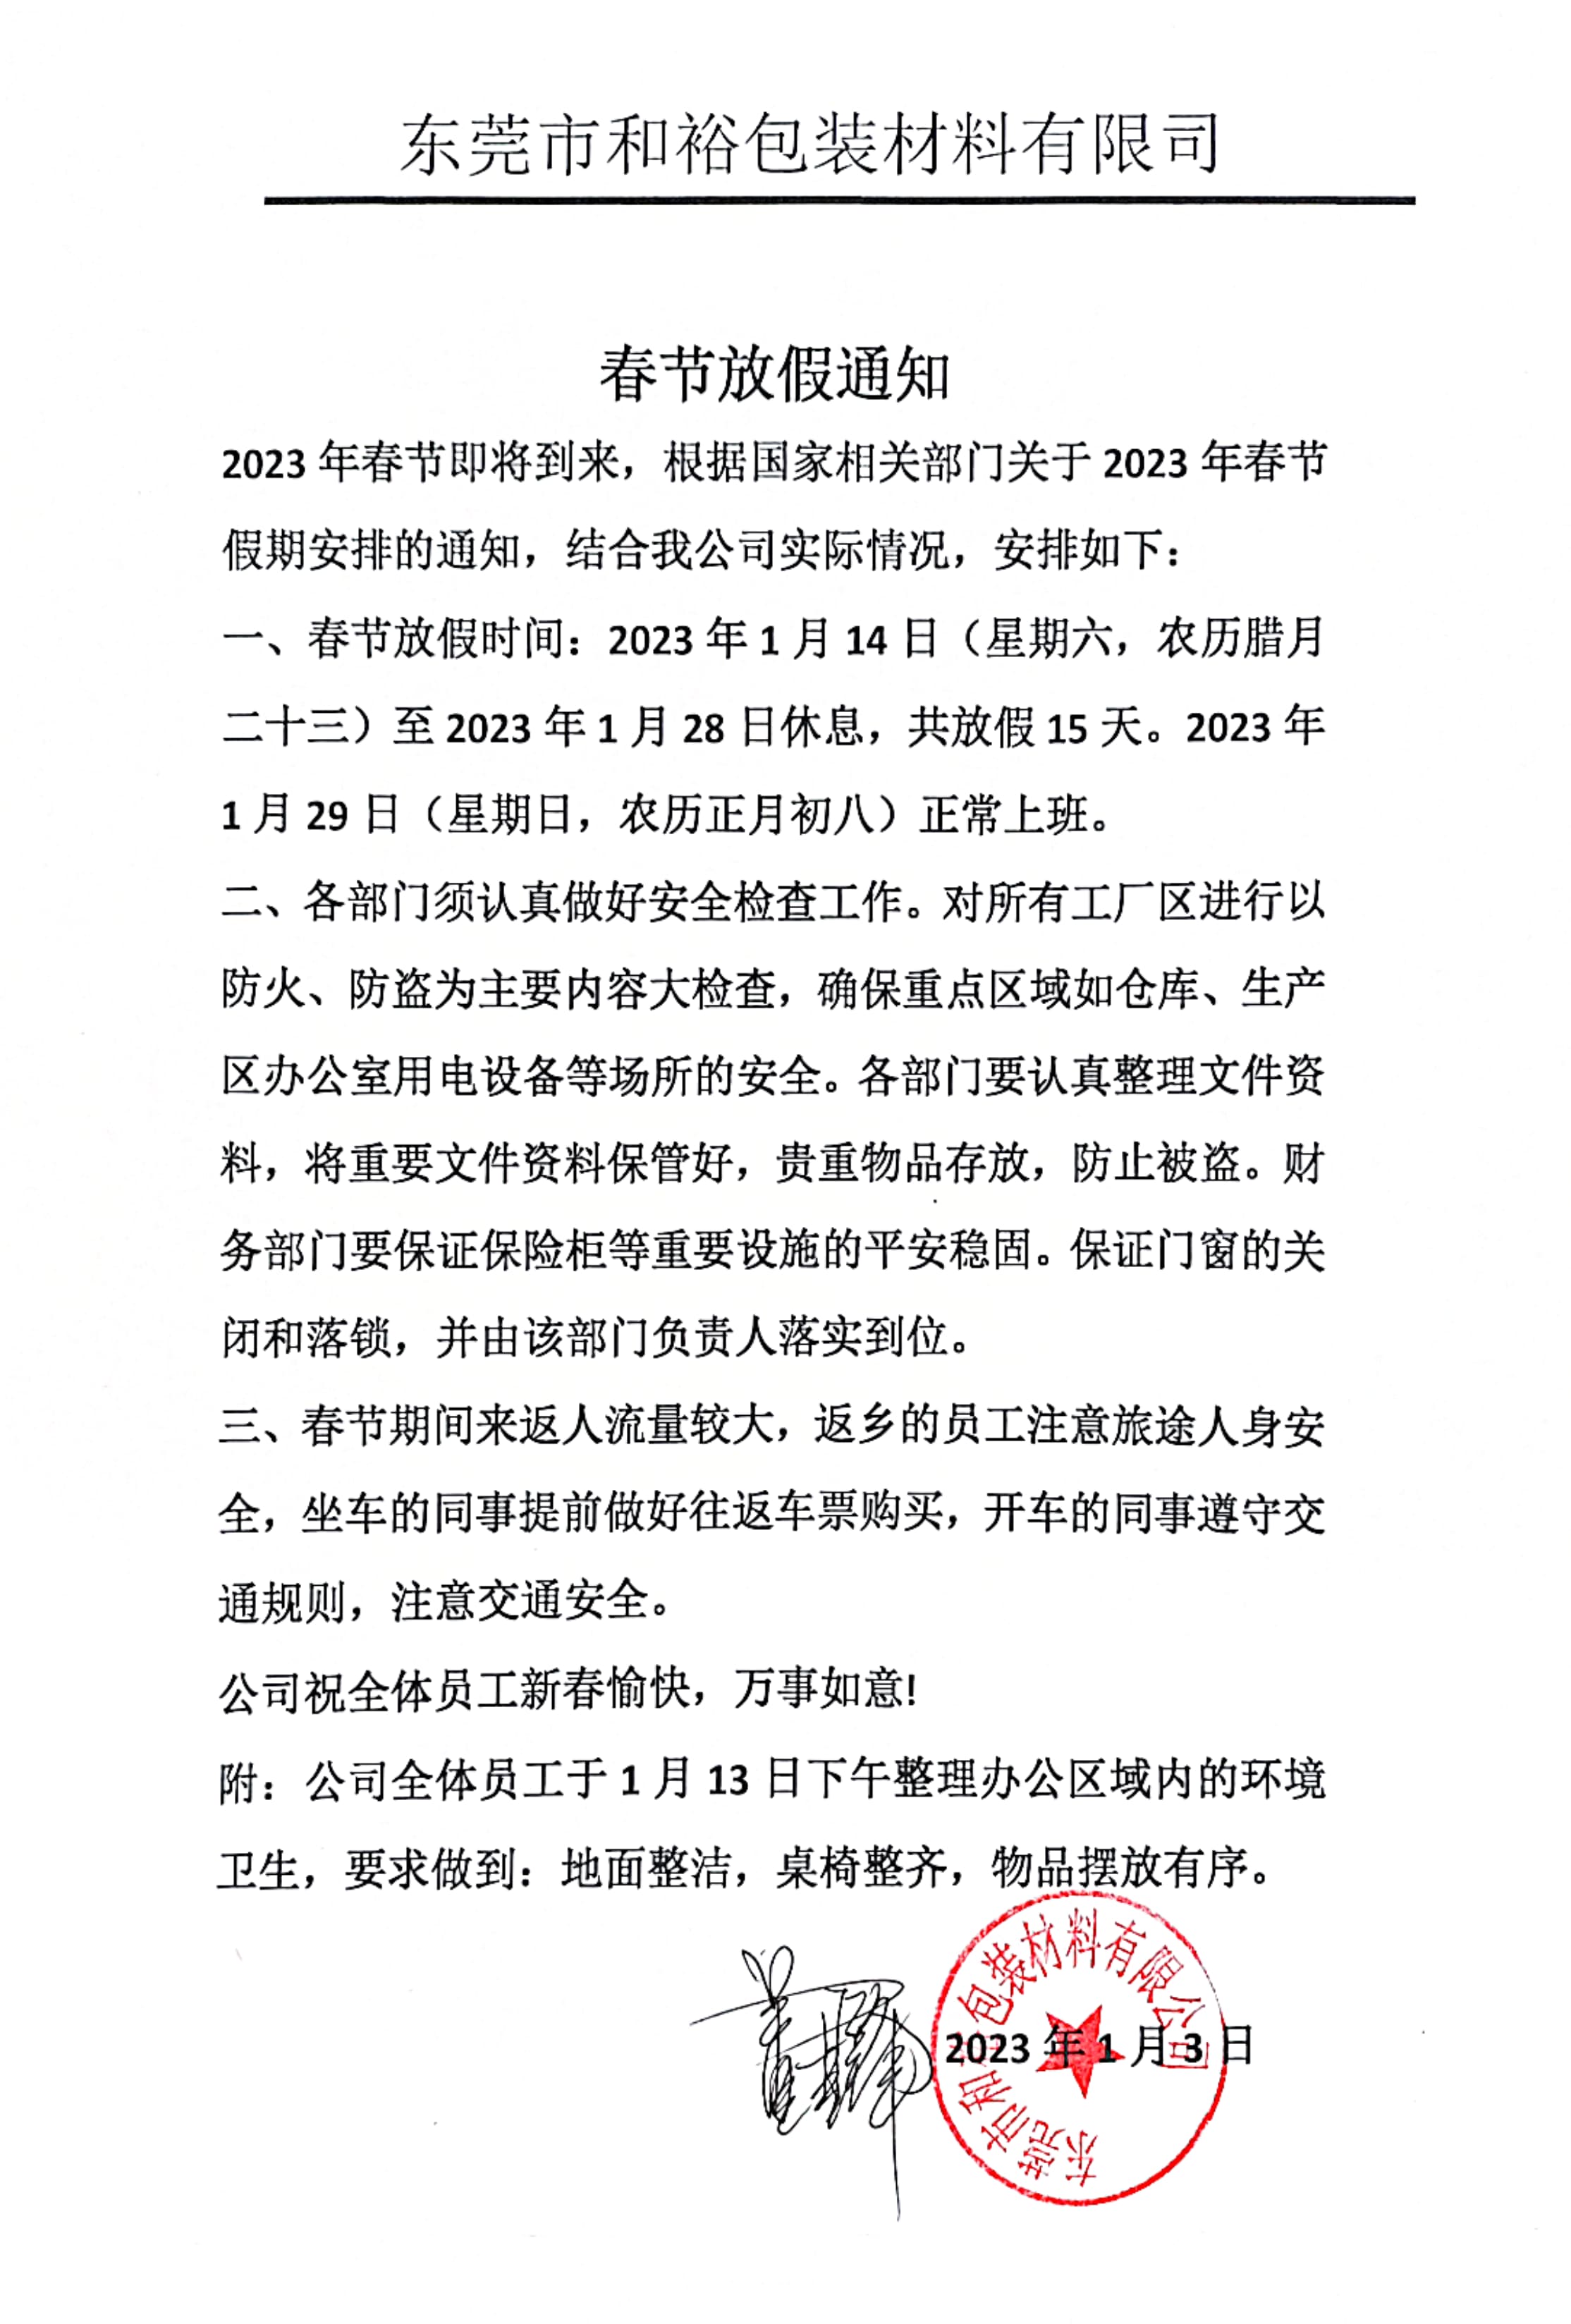 湘潭市2023年和裕包装春节放假通知